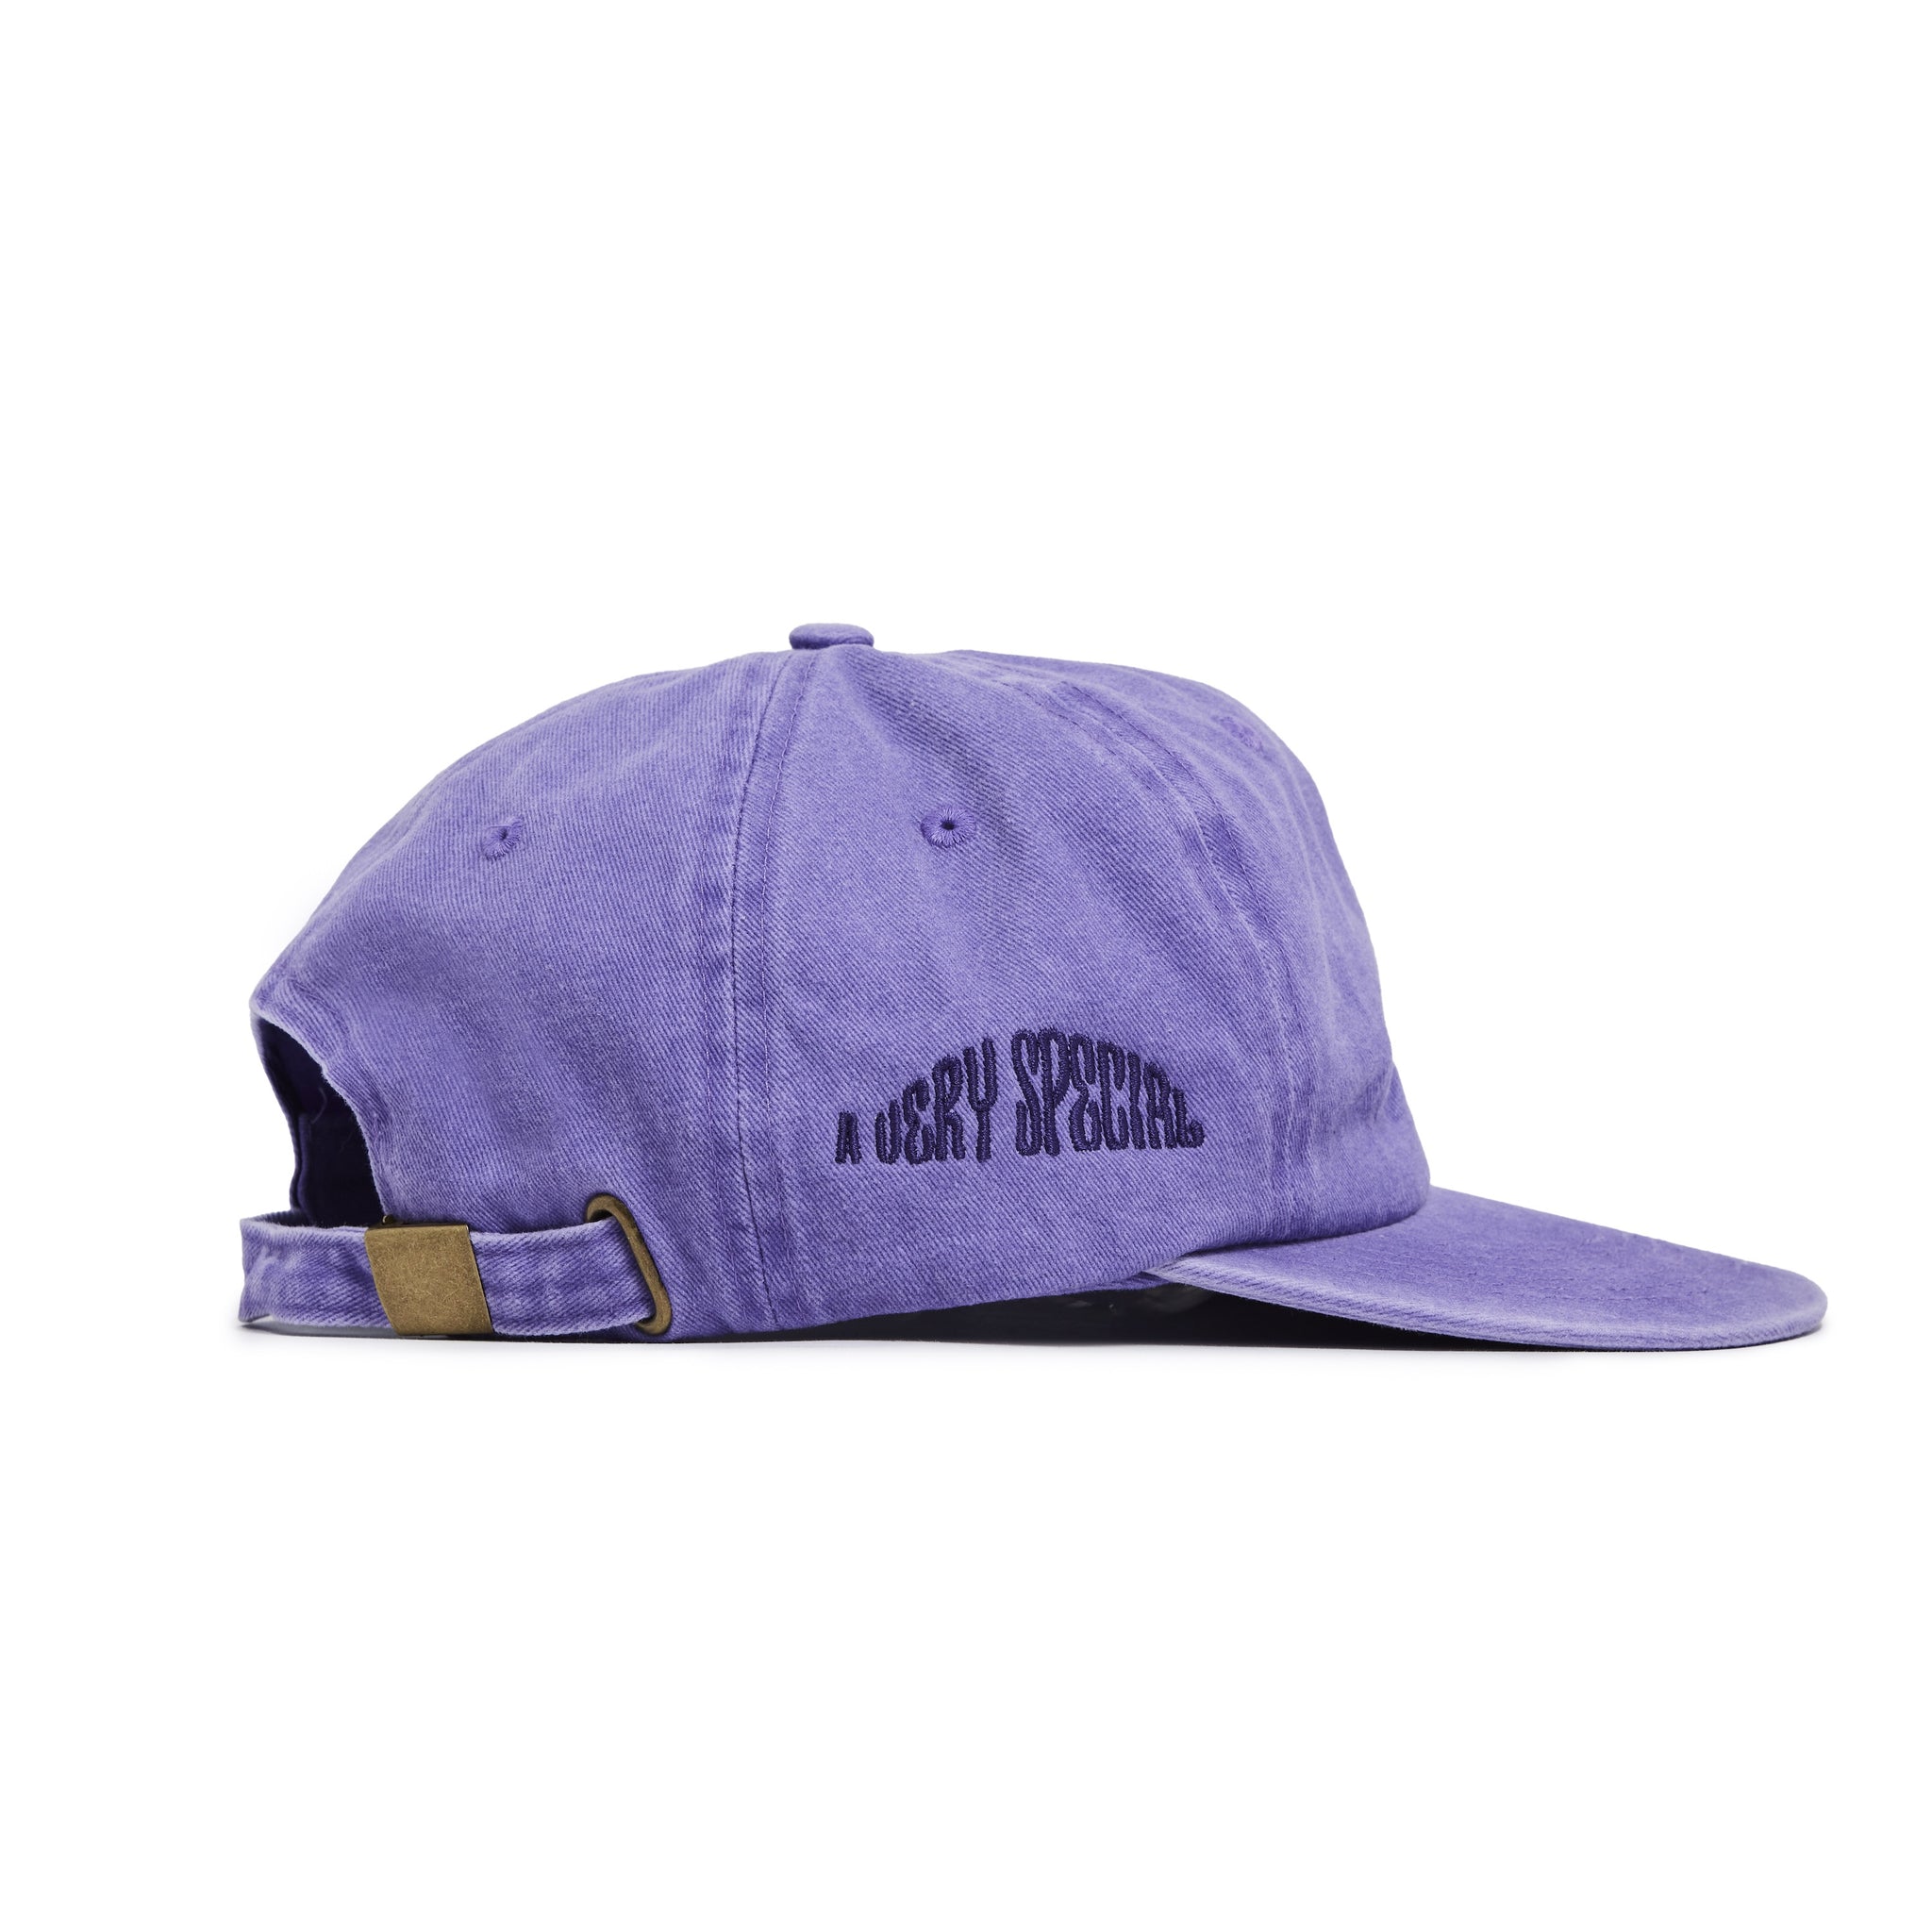 BARBOSA SIARGAO TRIP CAP - Purple